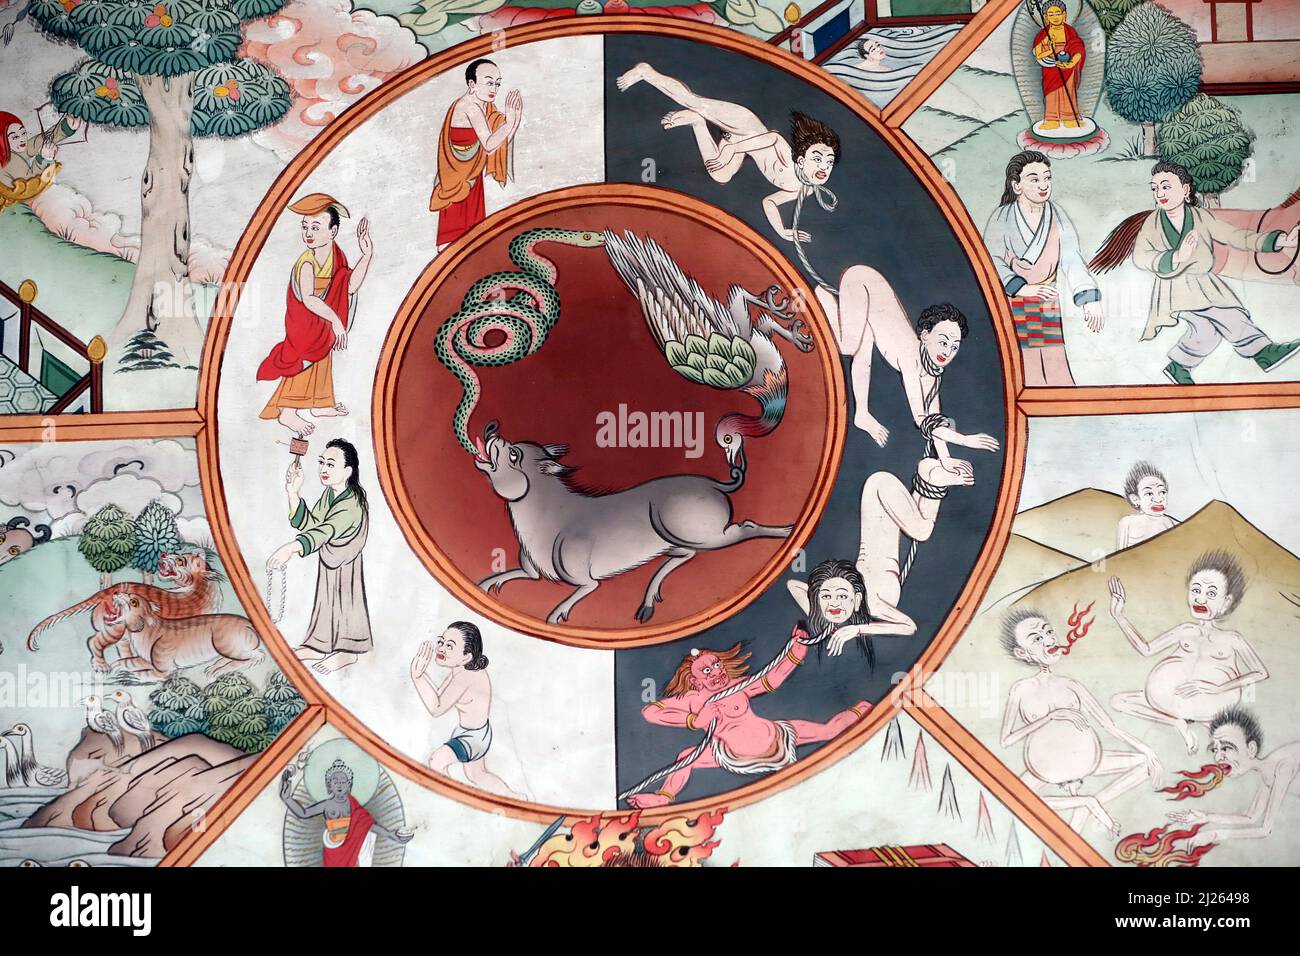 Monastère de Pema Osel Ling. La roue de la vie ou le bhavacakra est une représentation symbolique de saṃsara. Le cochon, le coq et le serpent représentent le thr Banque D'Images